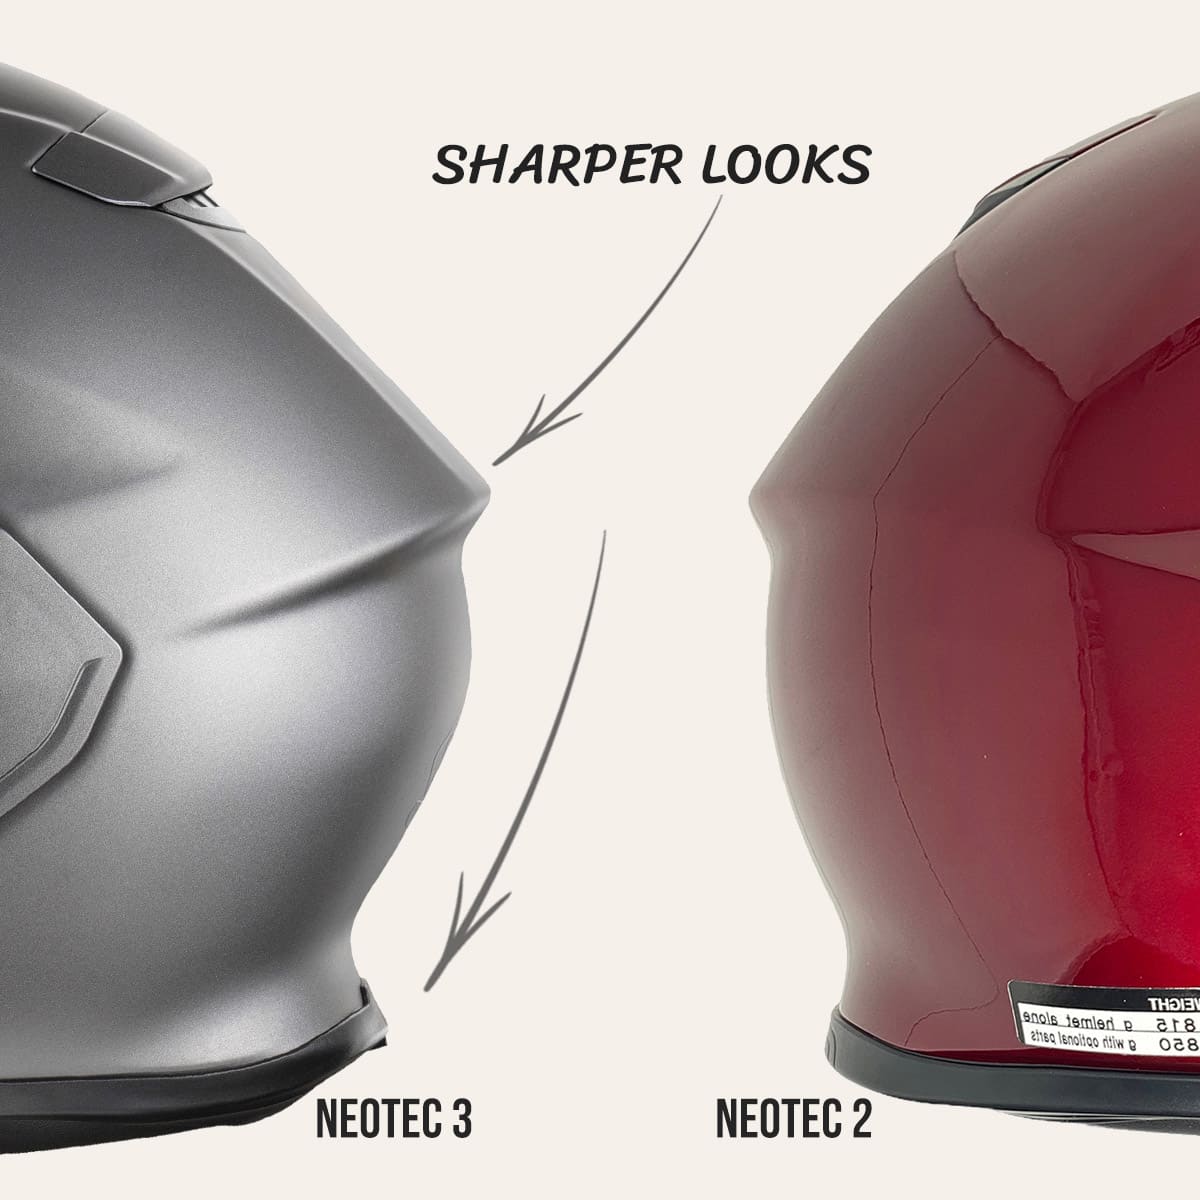 Shoei Neotec 3 - Sharper looks